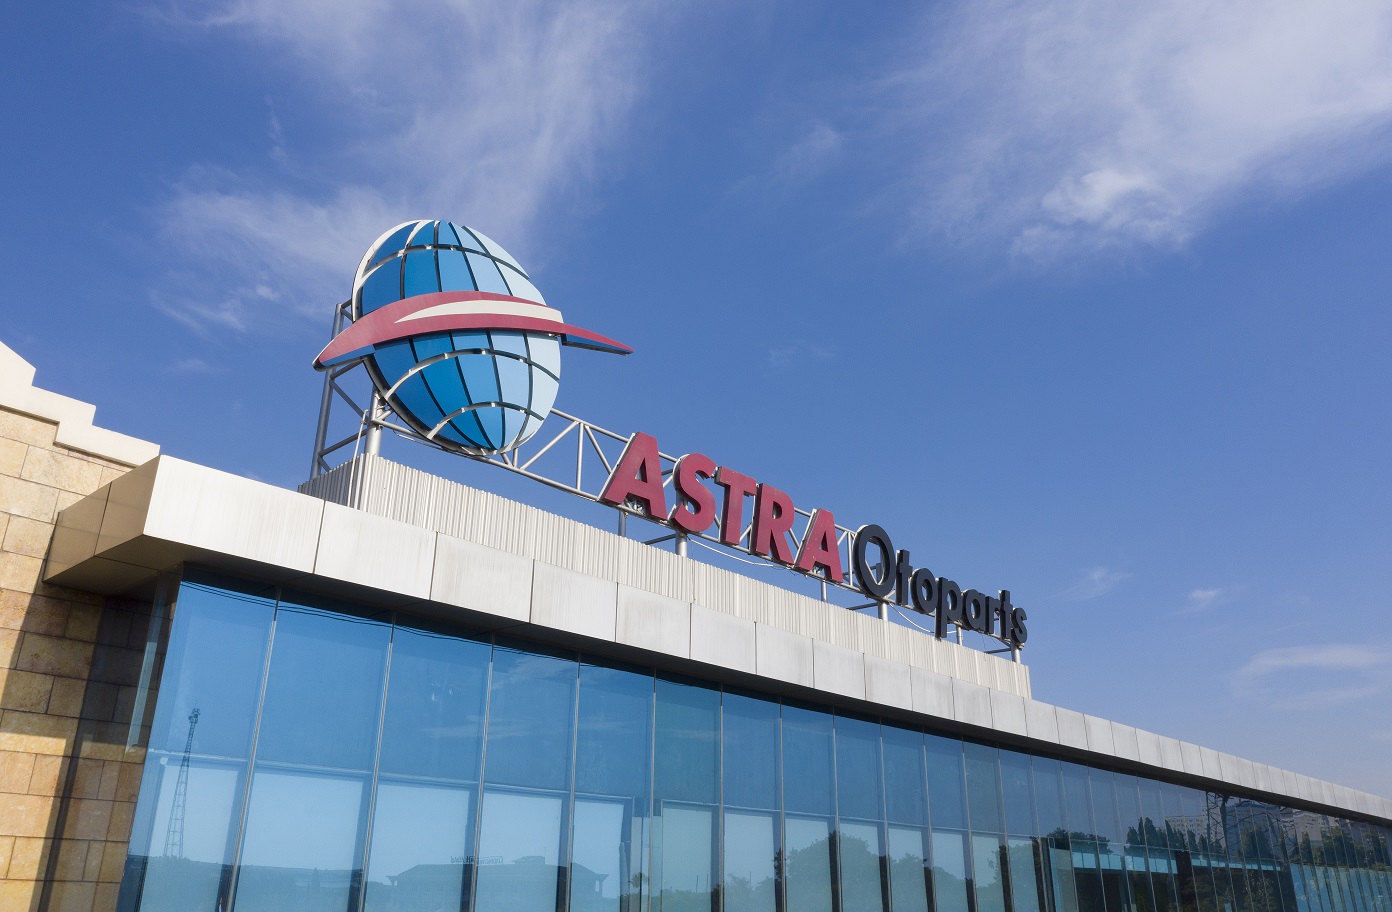 Astra Otoparts Logo